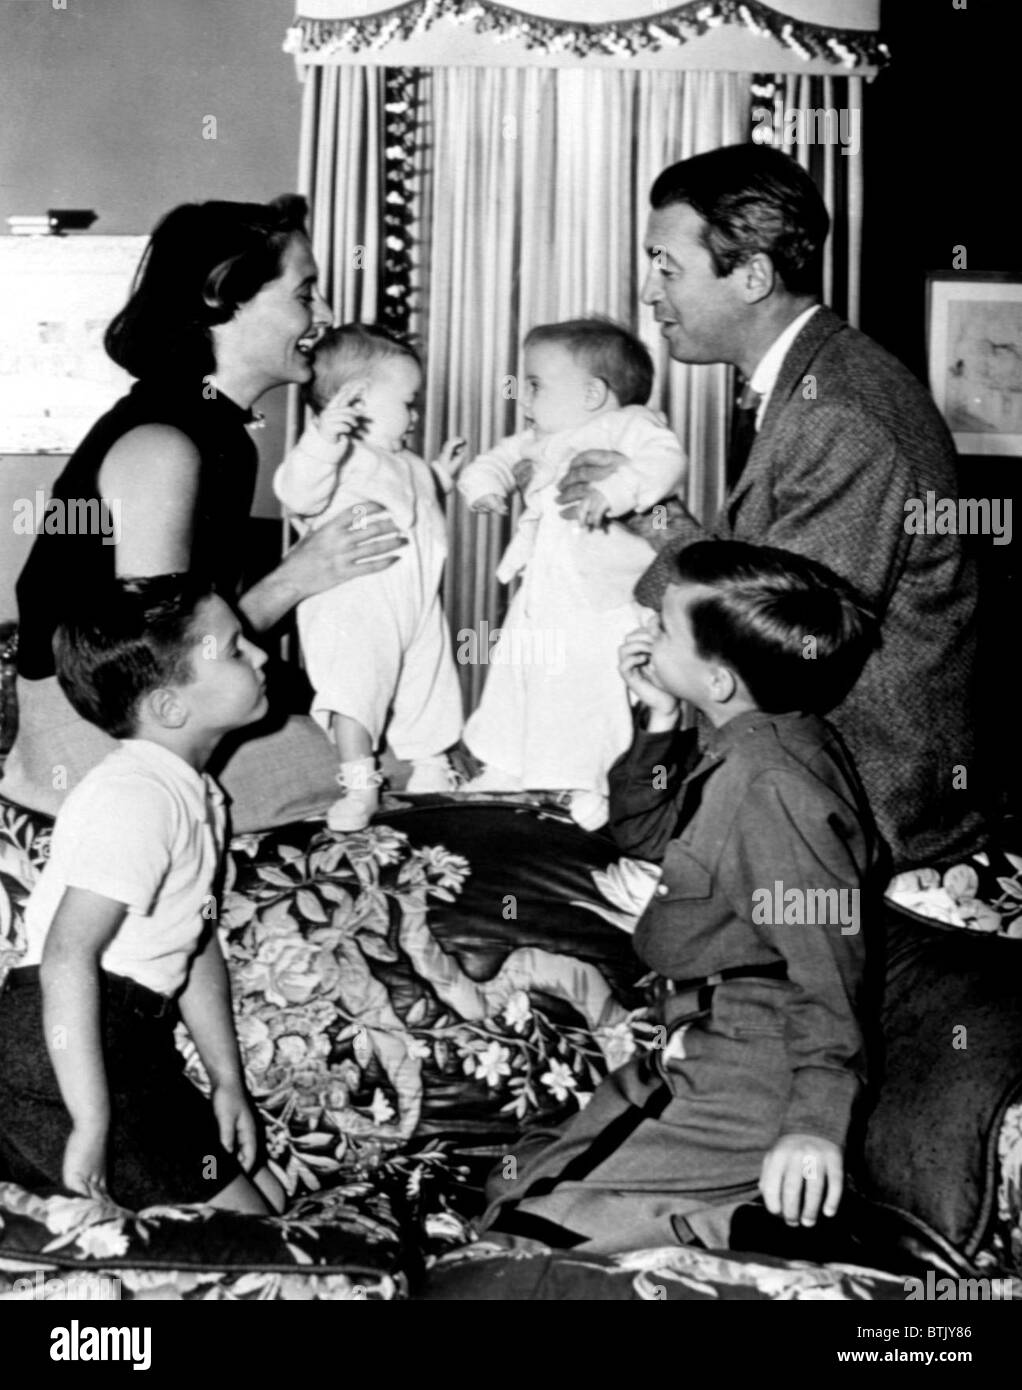 GLORIA STEWART, MICHAEL STEWART, KELLY STEWART, JUDY STEWART, RONNIE STEWART and JAMES STEWART, 1952 Stock Photo